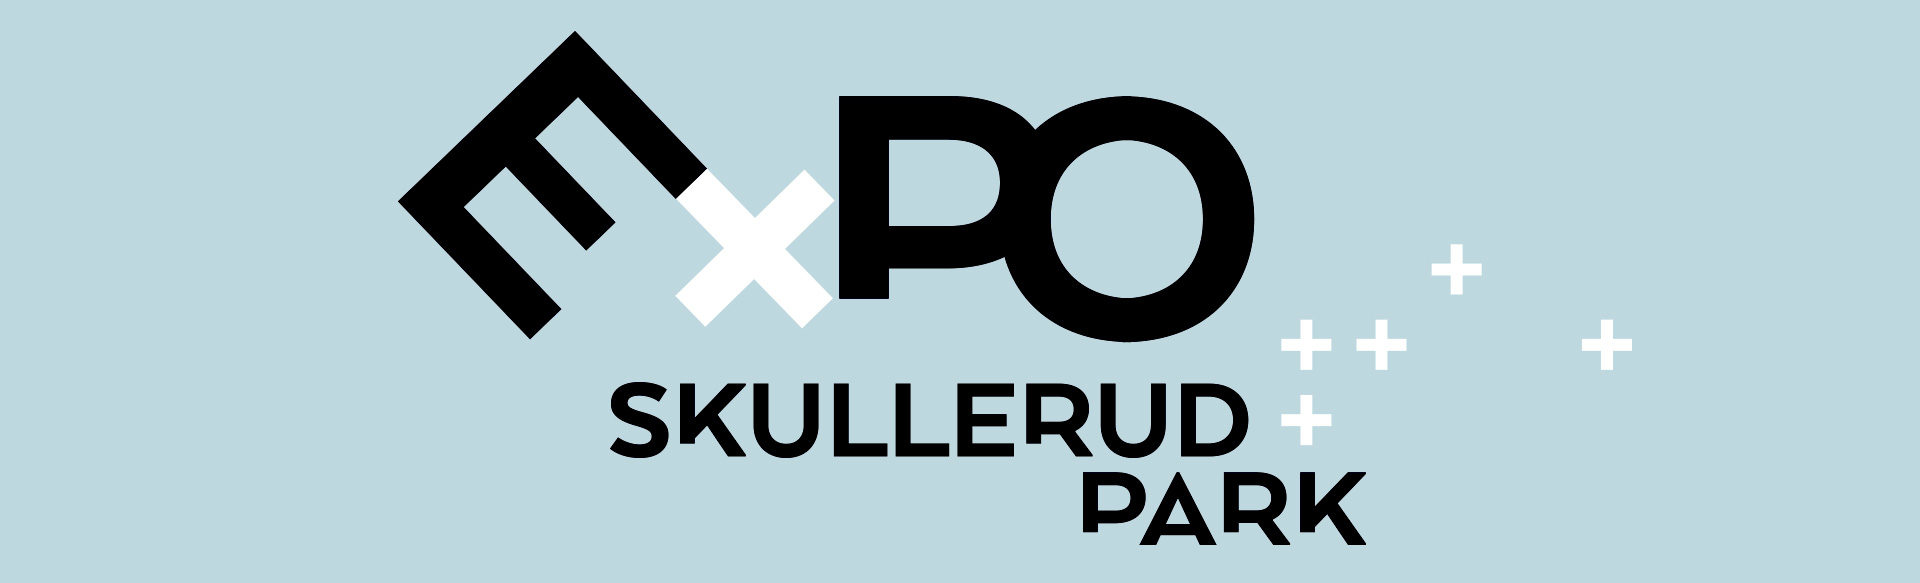 Expo Skullerud Park 2017 – hold av datoen!